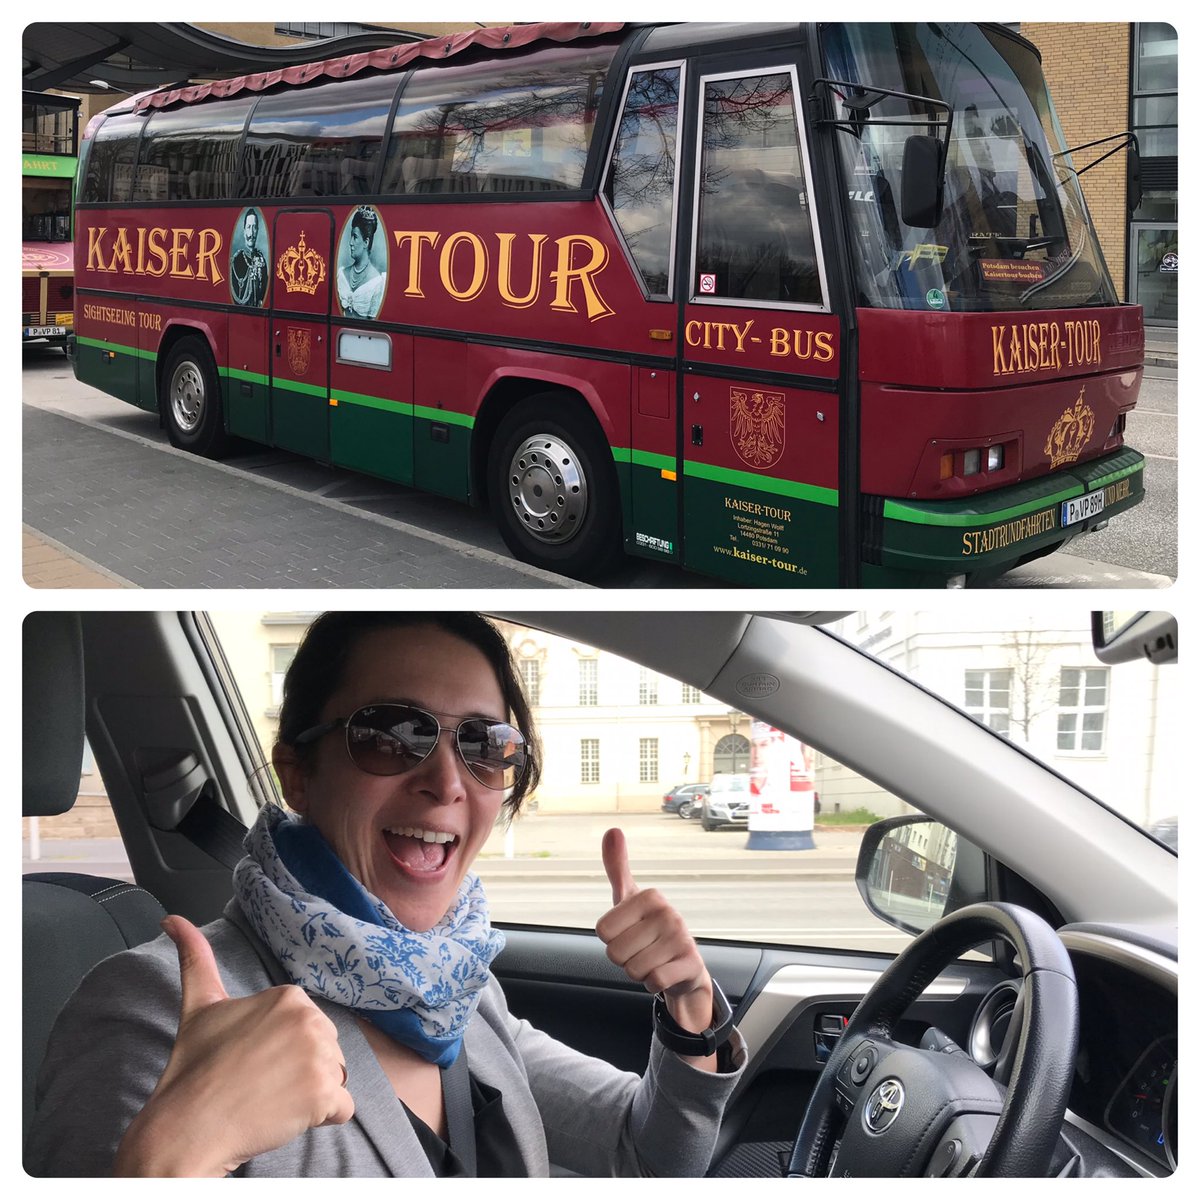 Mit @Fka_Kaiser in der VIP-Variante der Kaiserinnen-Tour unterwegs nach Jena. @mobility2grid